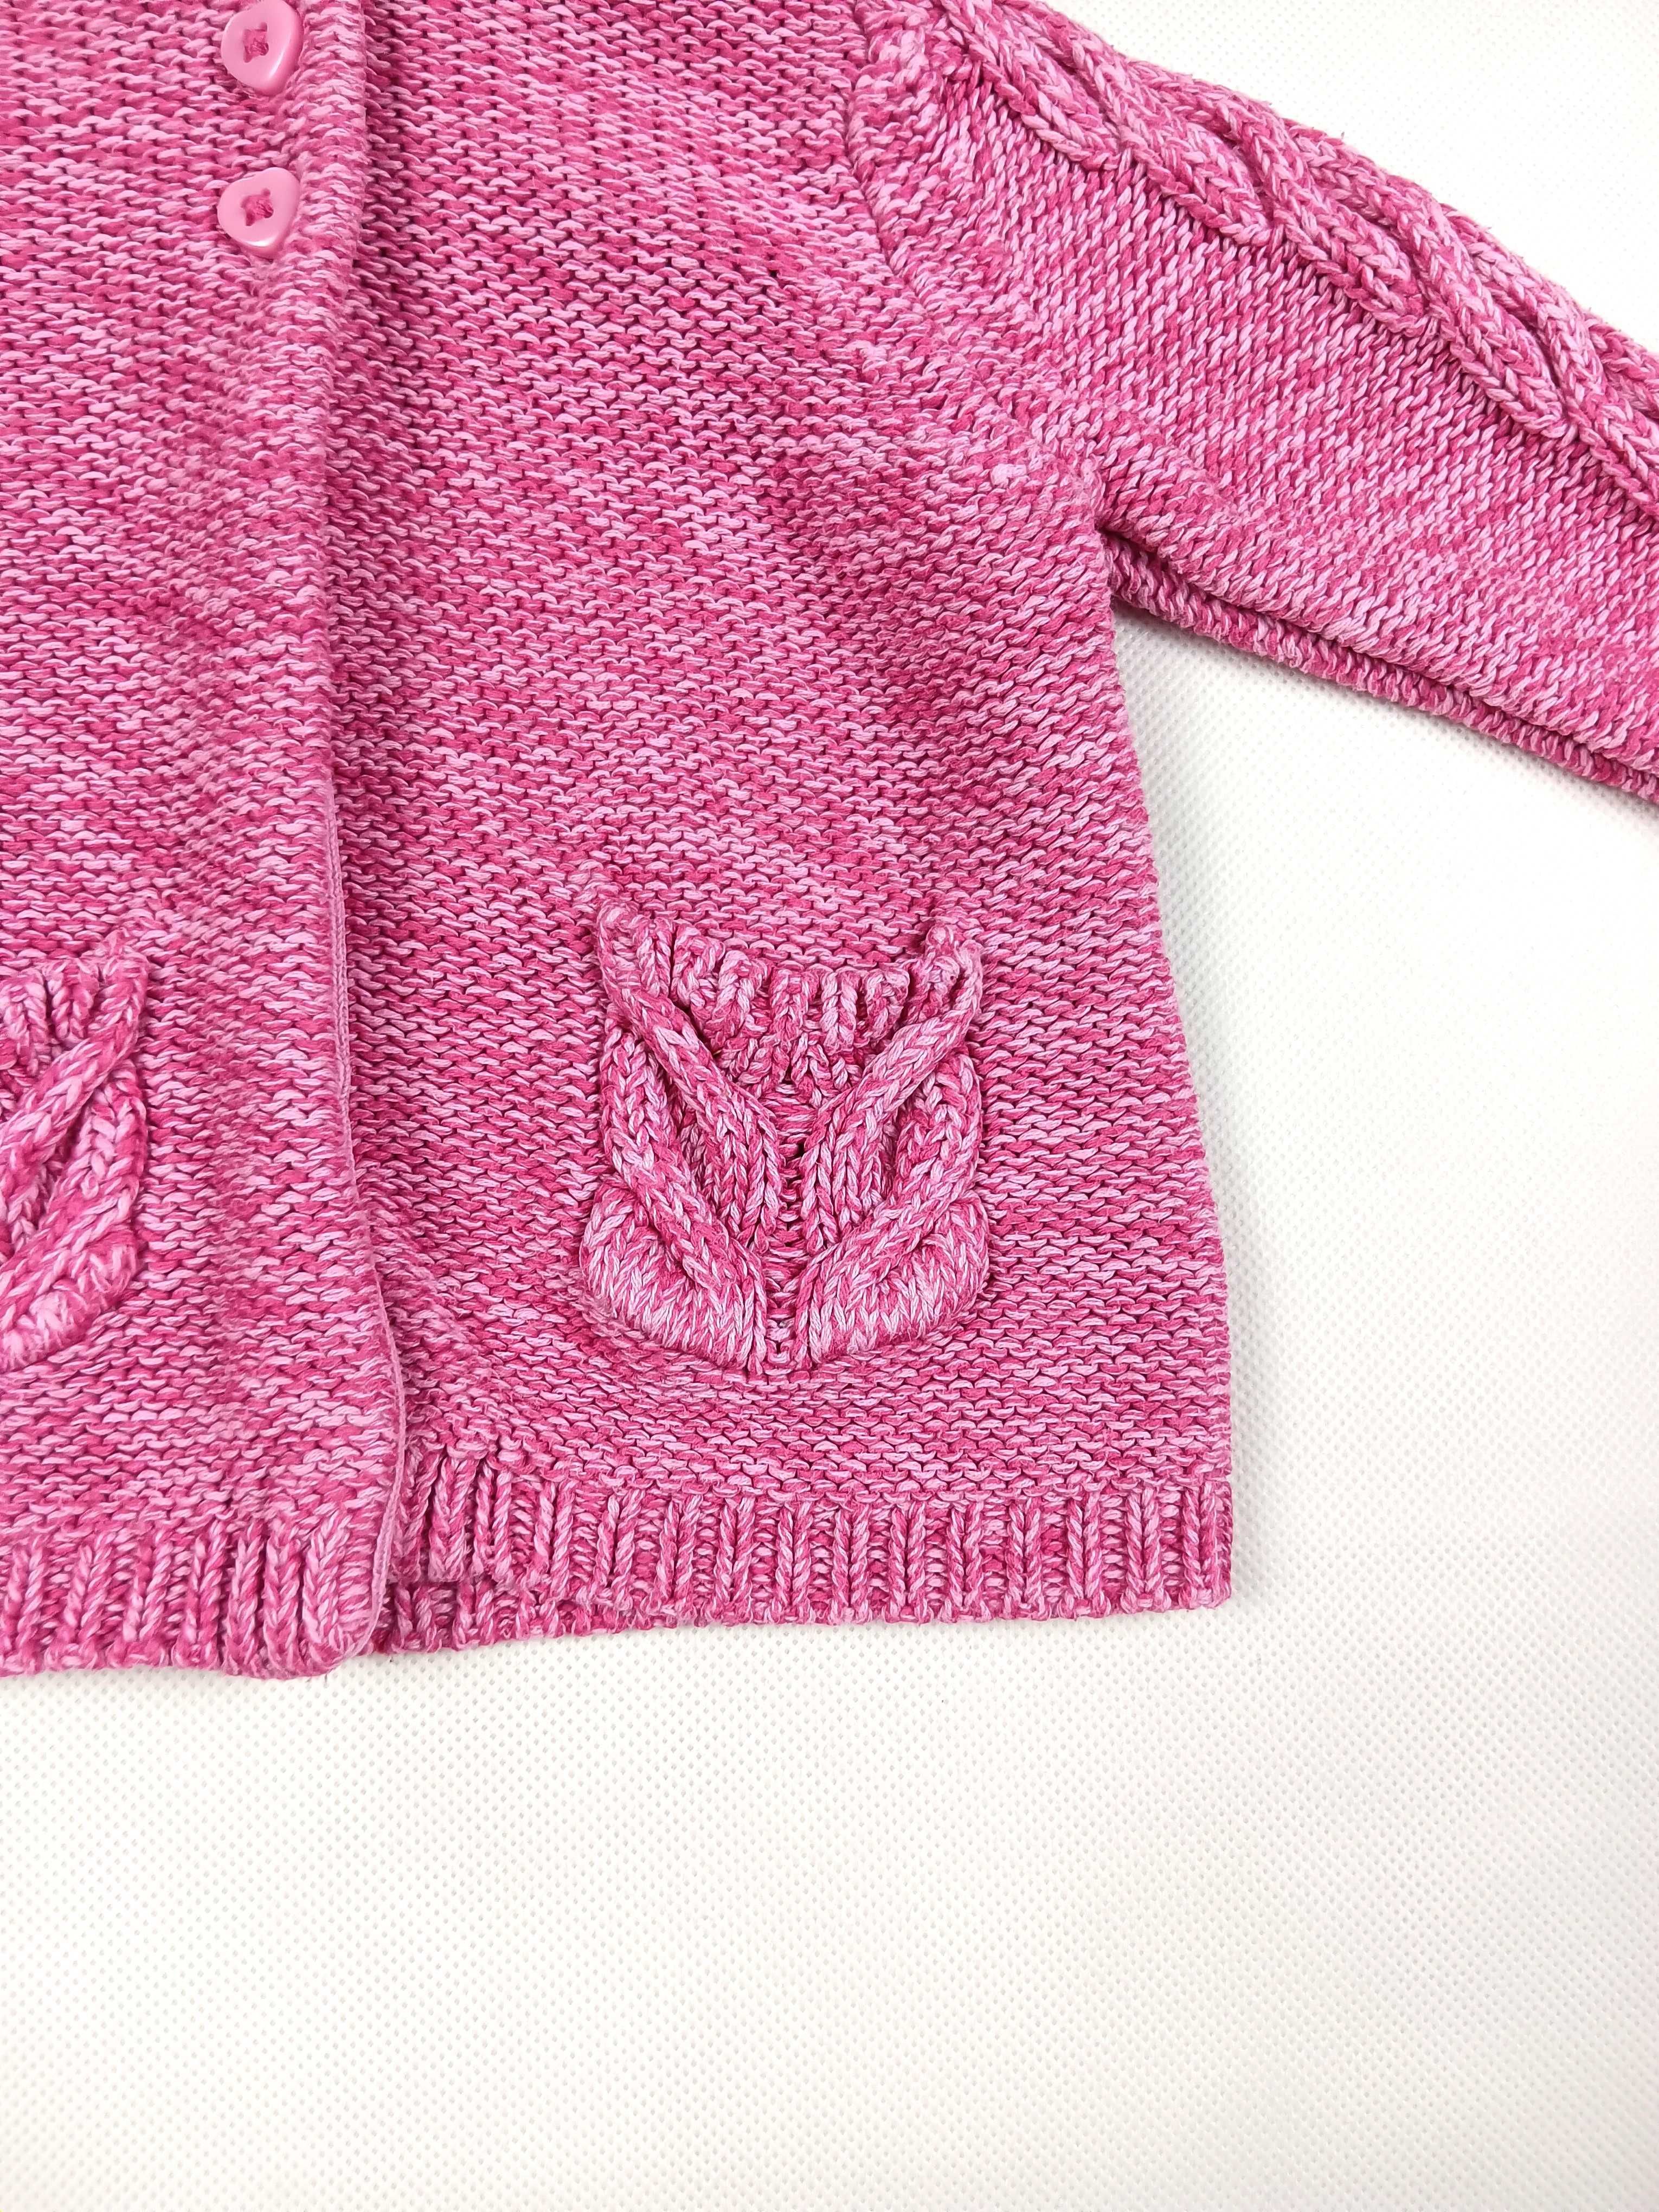 Różowy rozpinany sweterek dziecięcy z kapturem 68 /3-6 miesięcy